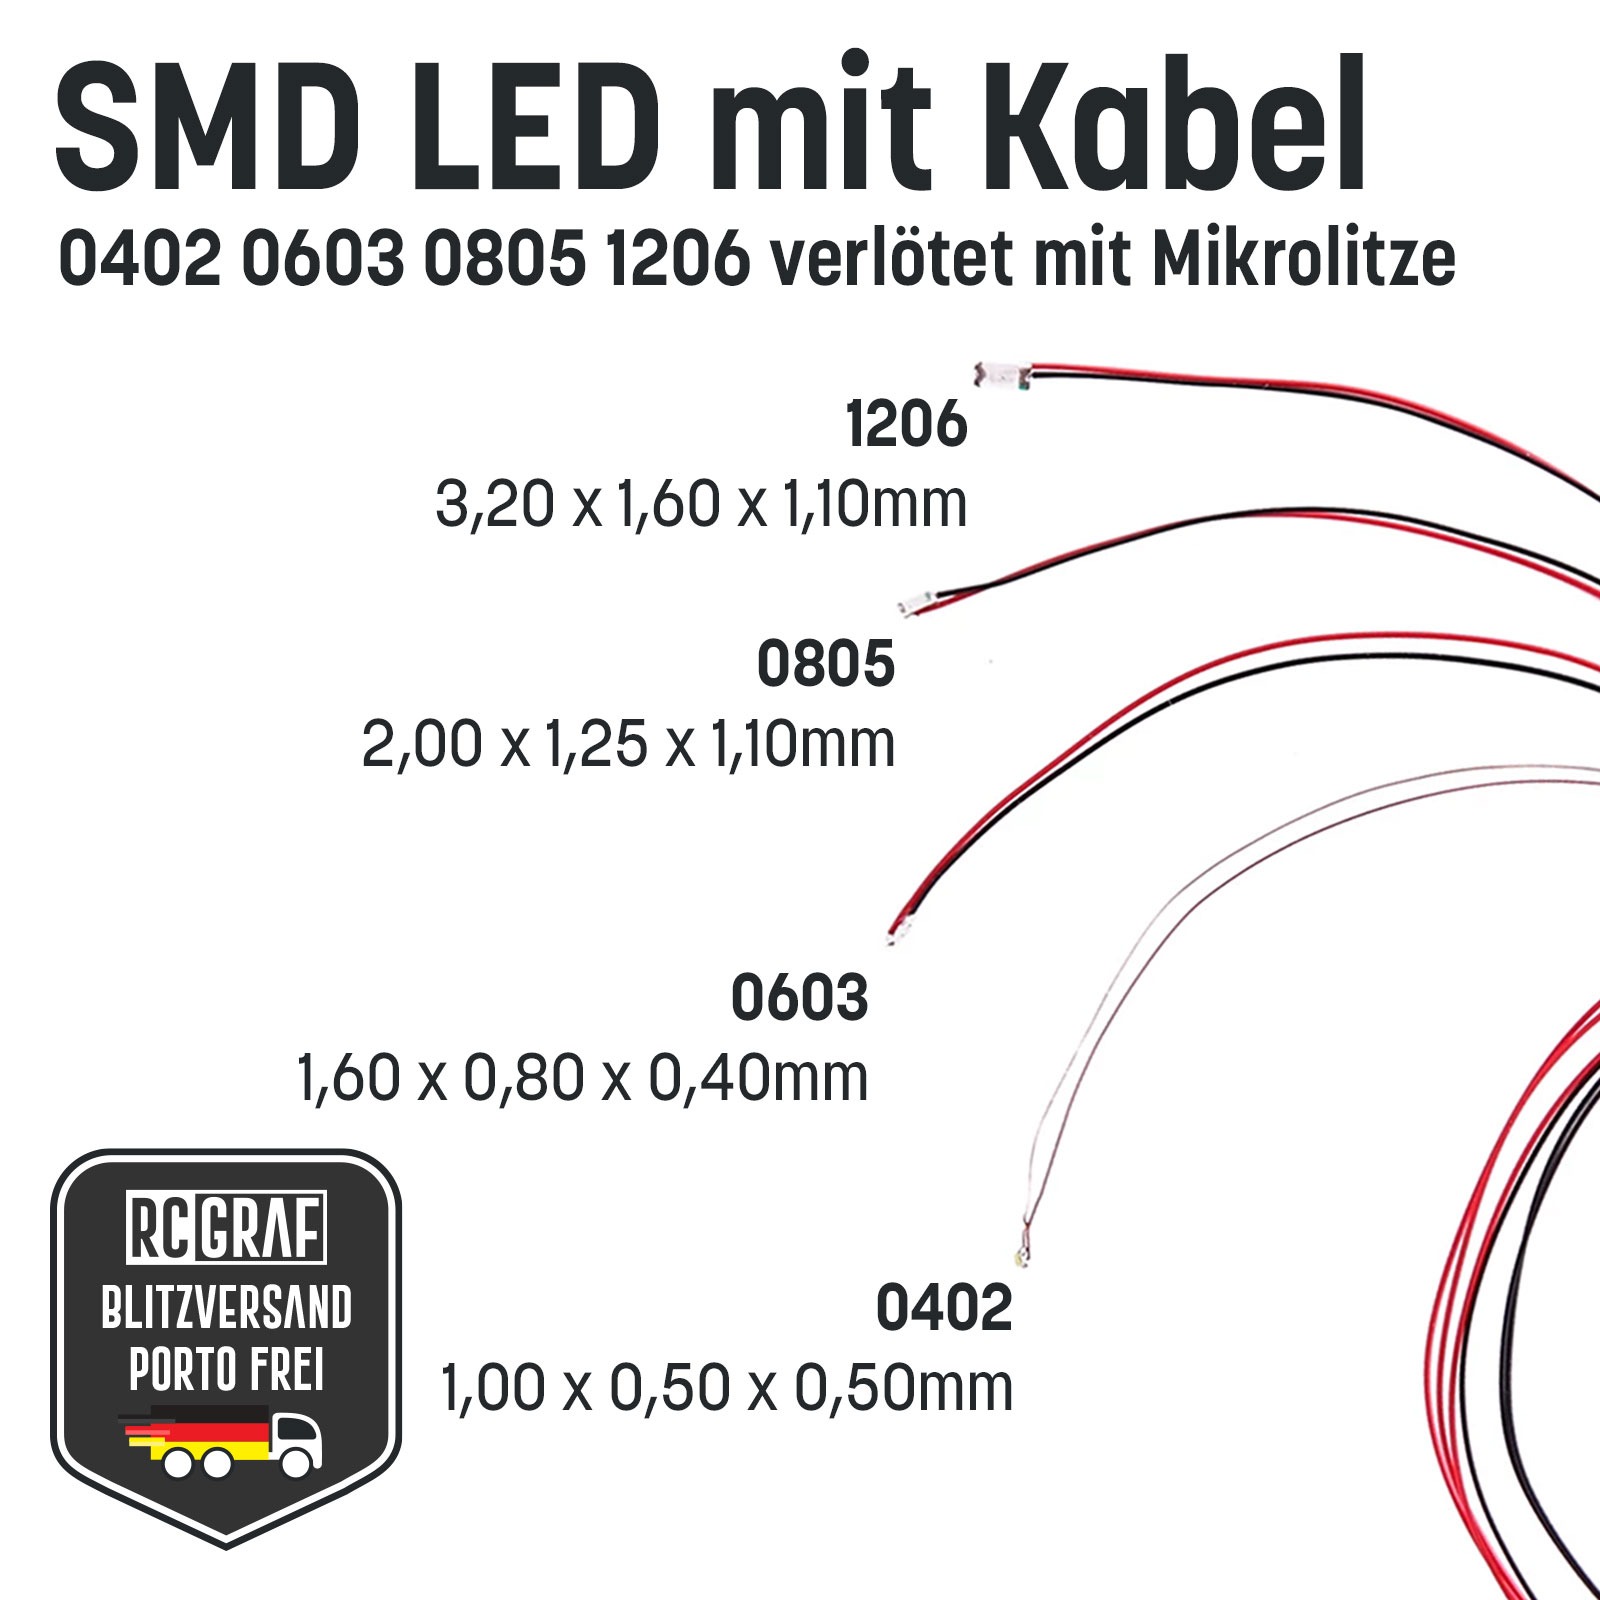 SMD LED 0402 Microlitze 30cm verlötet 10